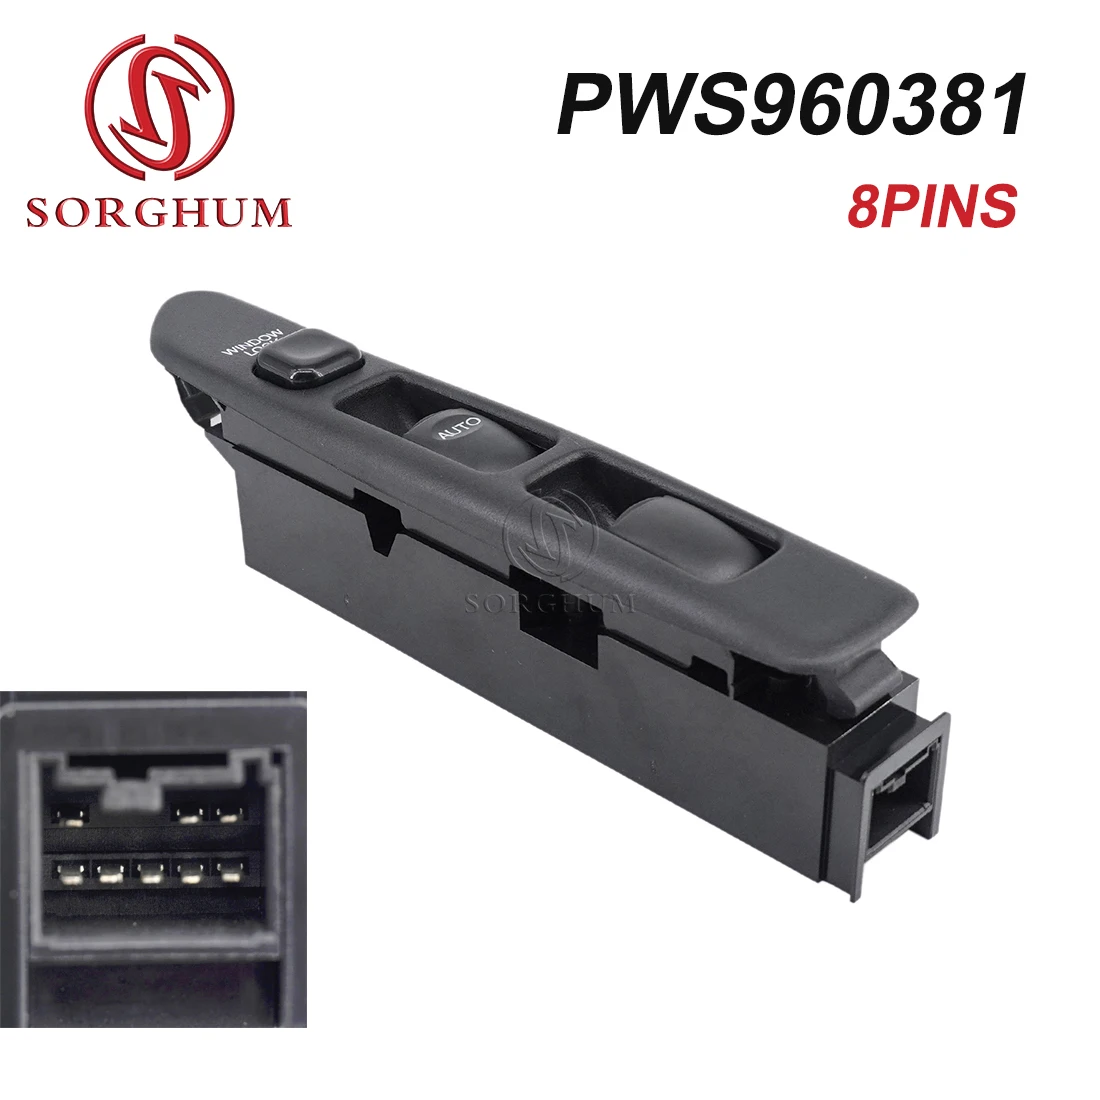 

SORGHUM Автомобильные аксессуары PWS960381, электрическая кнопка управления окном для MITSUBISHI Proton Satria Arena Putra, 8 контактов